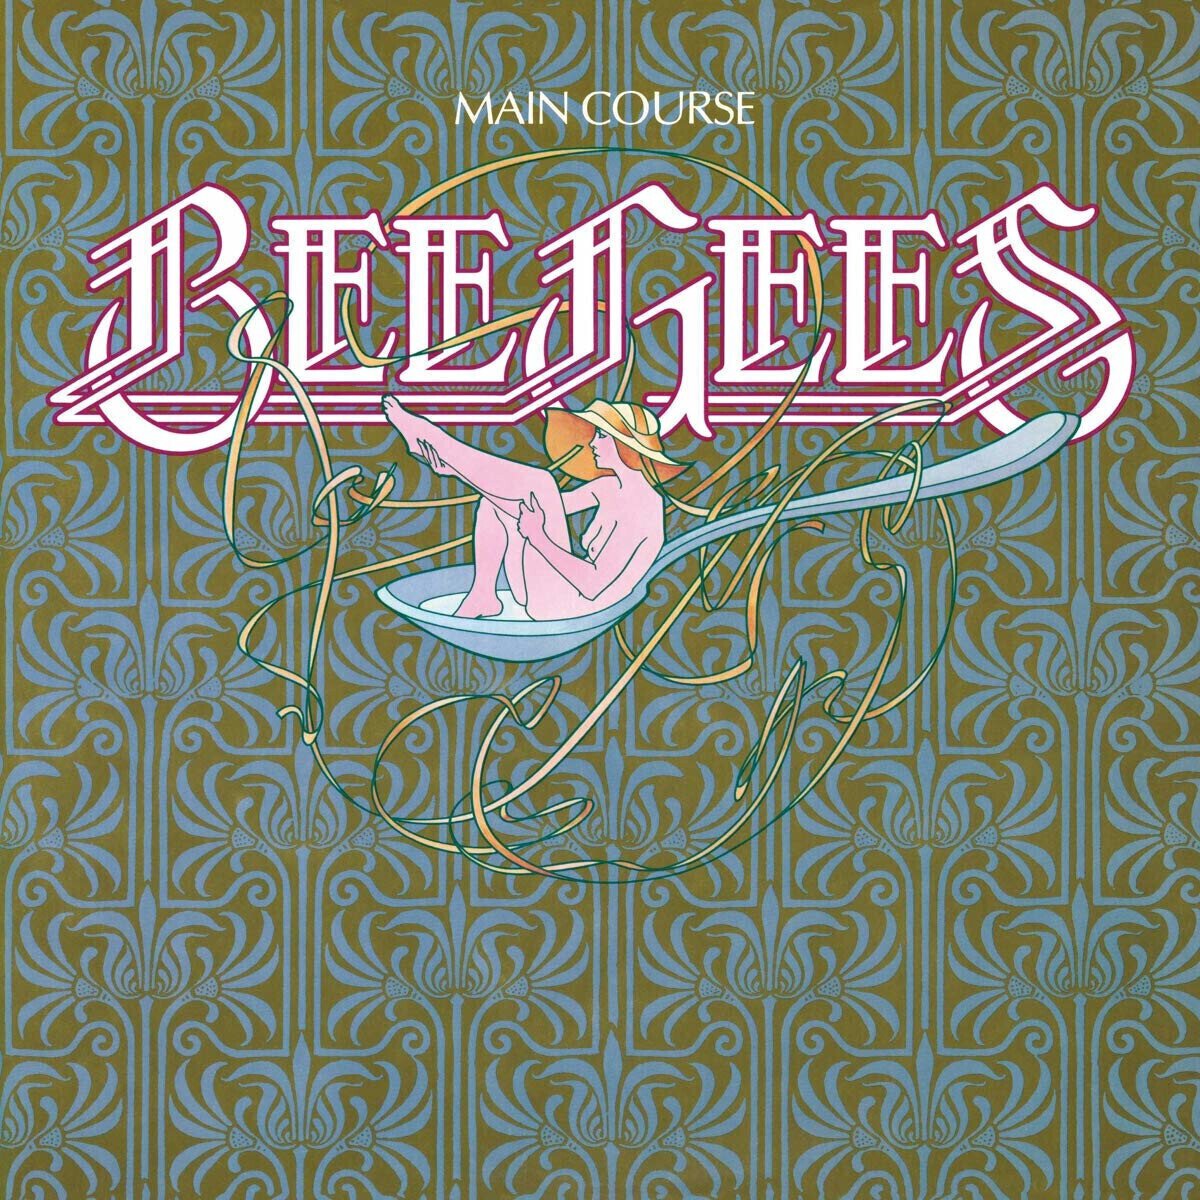 Hanglemez Bee Gees - Main Course (LP)